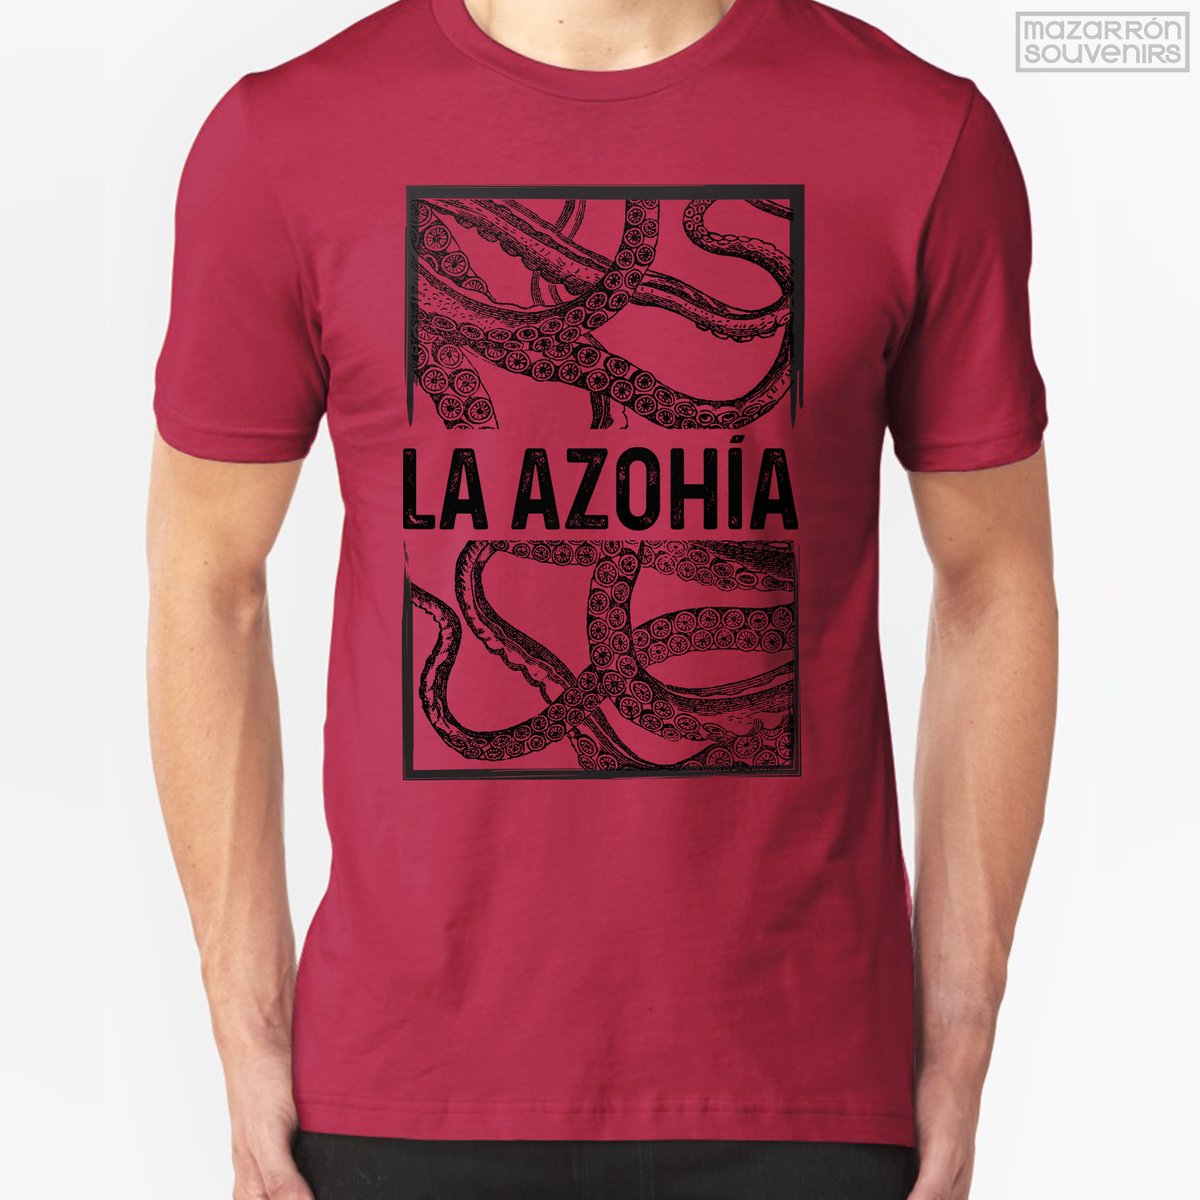 Camiseta disponible en nuestra tienda de Puerto de Mazarrón / T-Shirt available at our shop in Puerto de Mazarrón

#mazarronsouvenirs #laazohia #pulpo #tentaculos #puertodemazarron